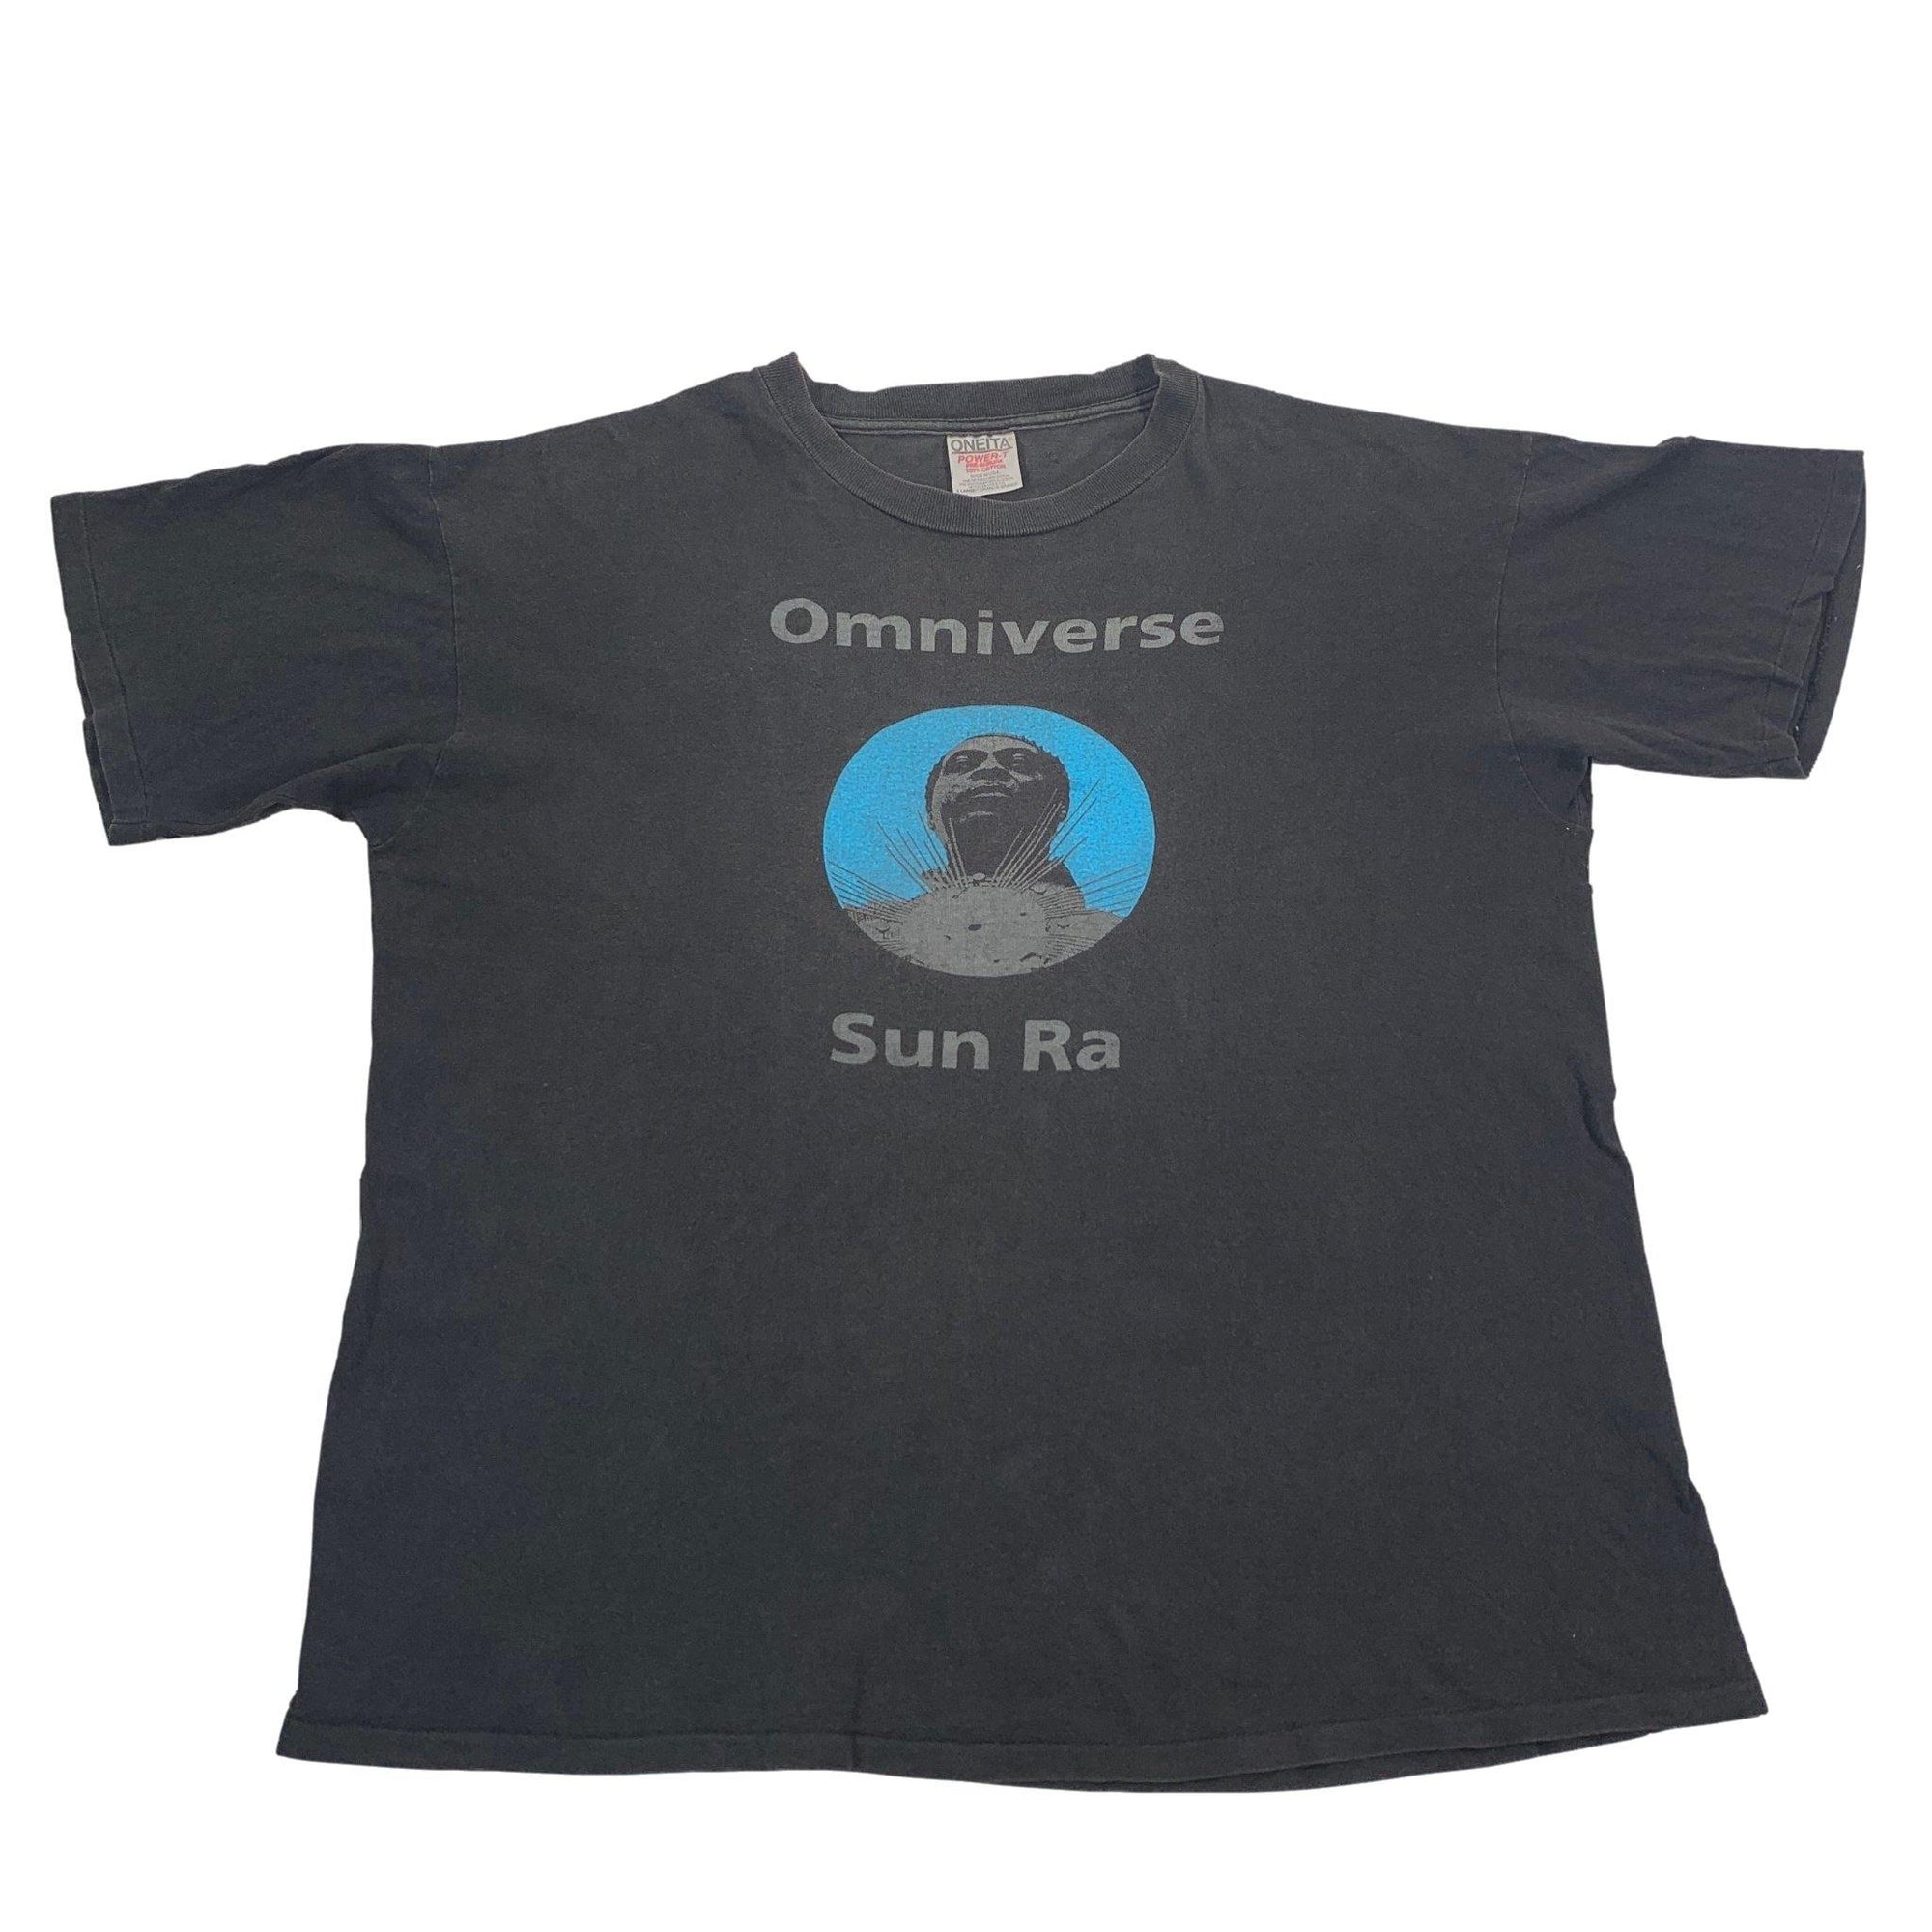 Vintage Sun Ra "Omniverse" T-Shirt - jointcustodydc